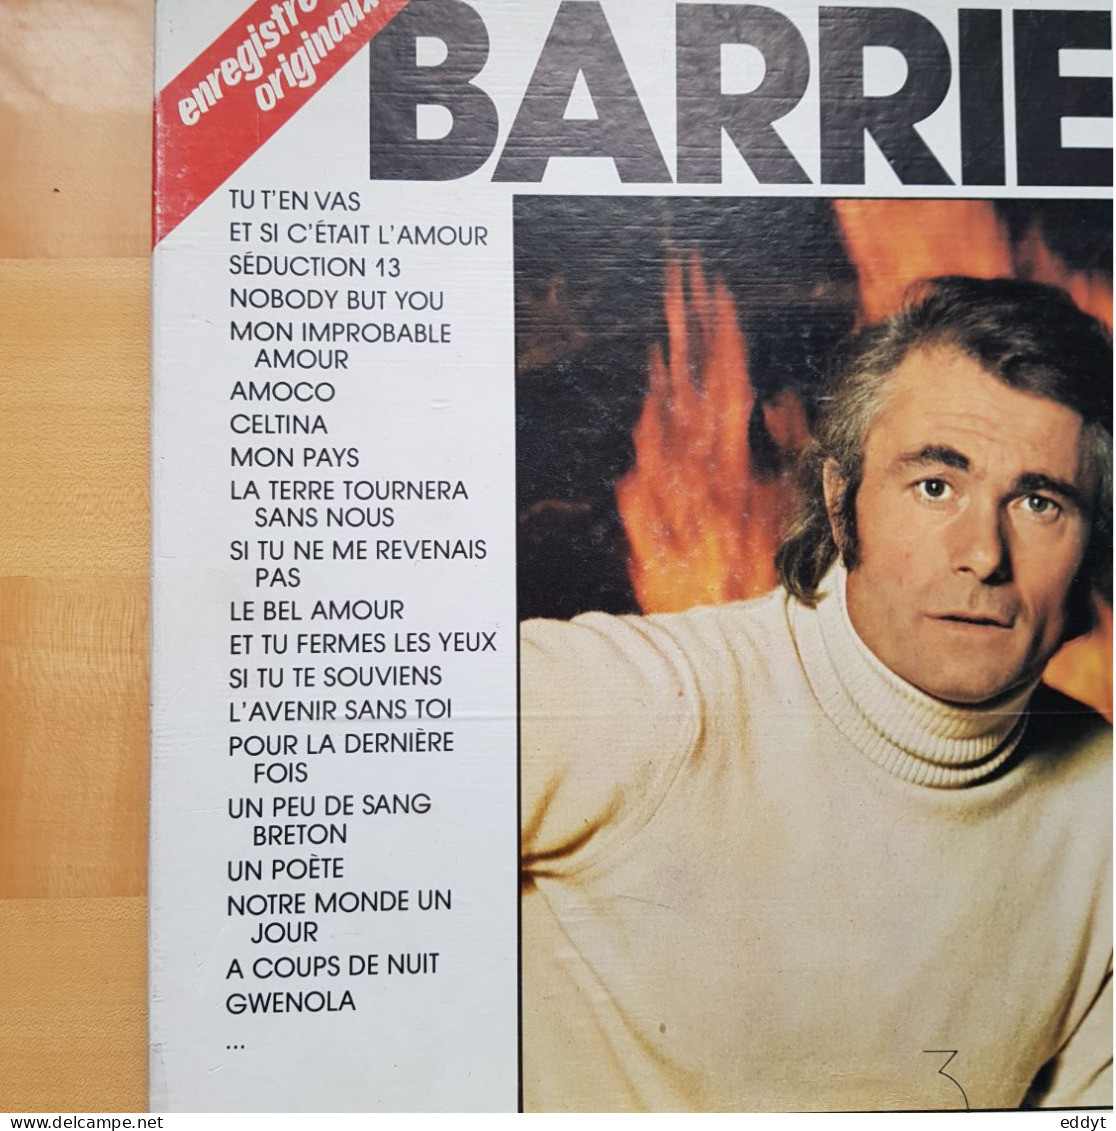 Coffret De 3 DISQUES Vinyles  T. 33 -  Enregistrements Originaux  Alain BARRIÈRE -  TBE - Altri - Francese